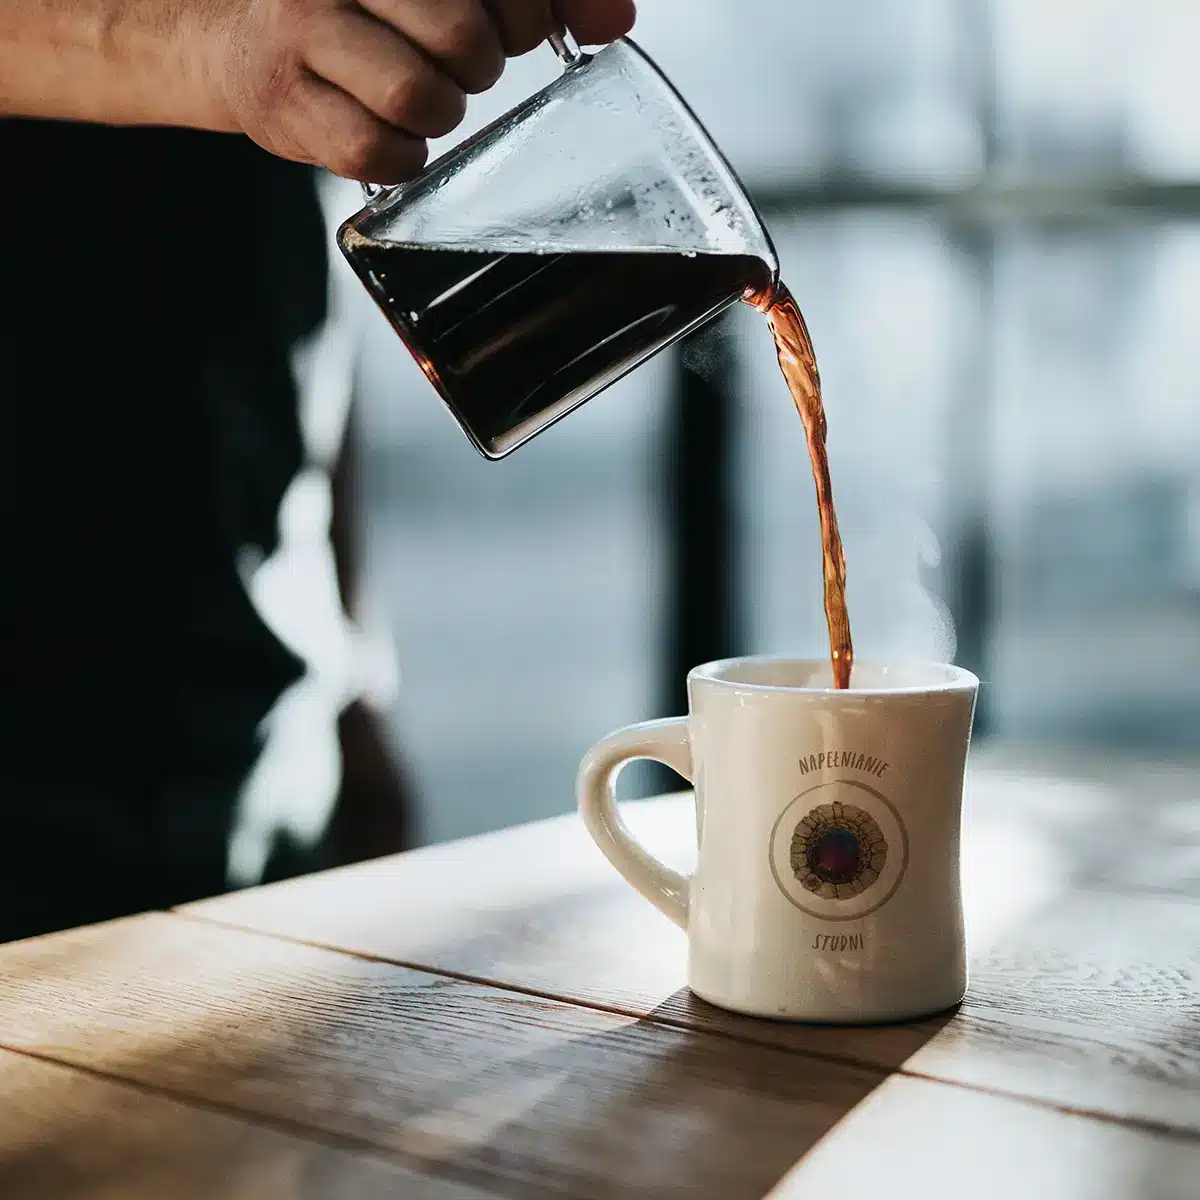 A person pouring a coffee into a white mug